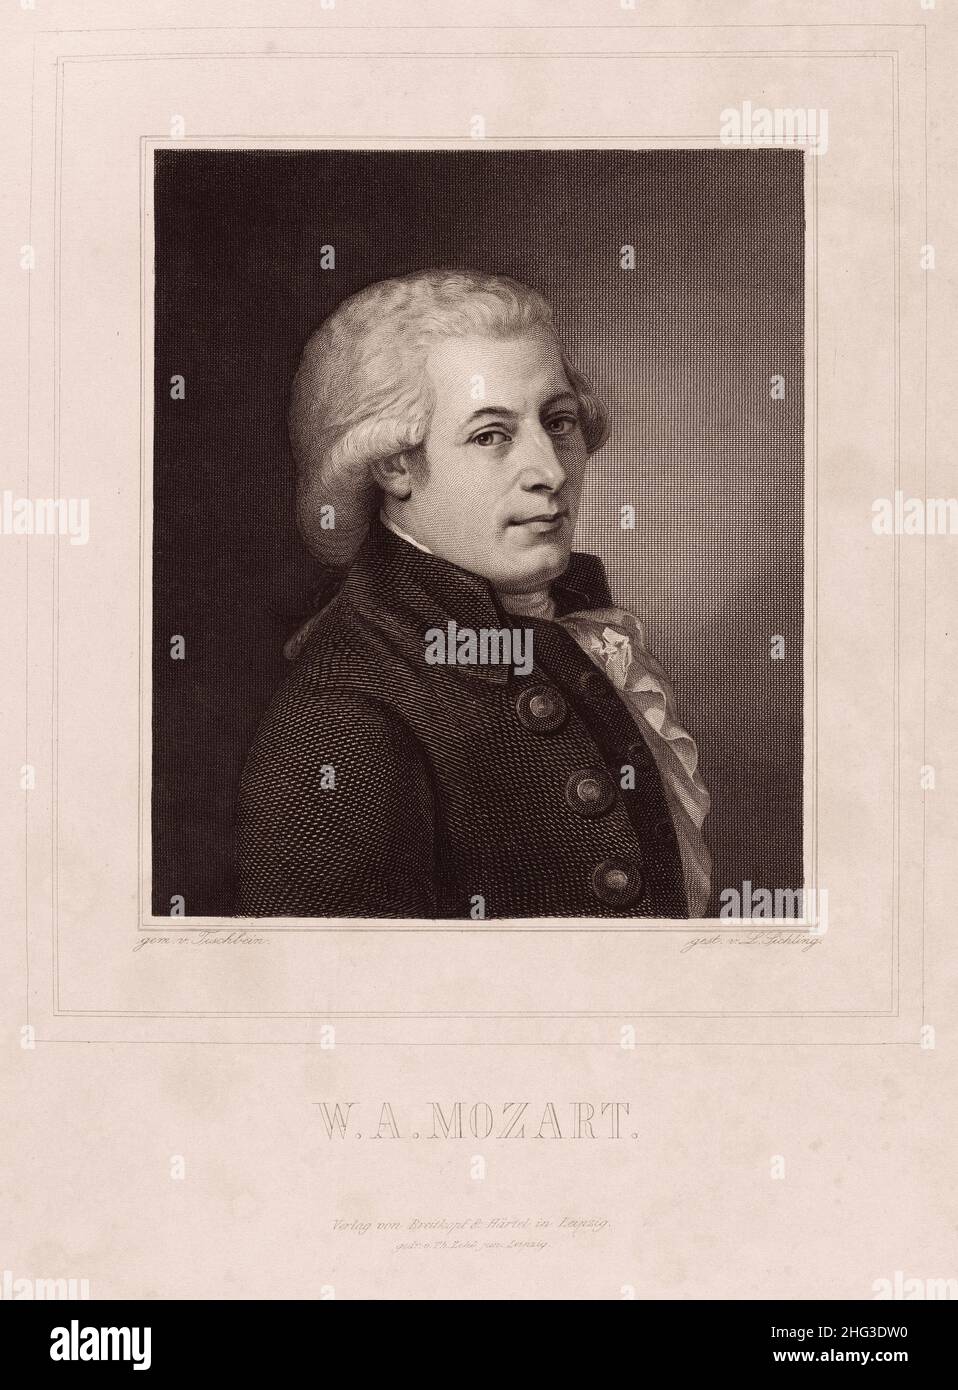 Porträt von Wolfgang Amadeus Mozart. 1835-1850, von Lazarus Gottlieb Sichling (1812-1863) – Grafiker. Wolfgang Amadeus Mozart (1756 – 1791) tauft Stockfoto